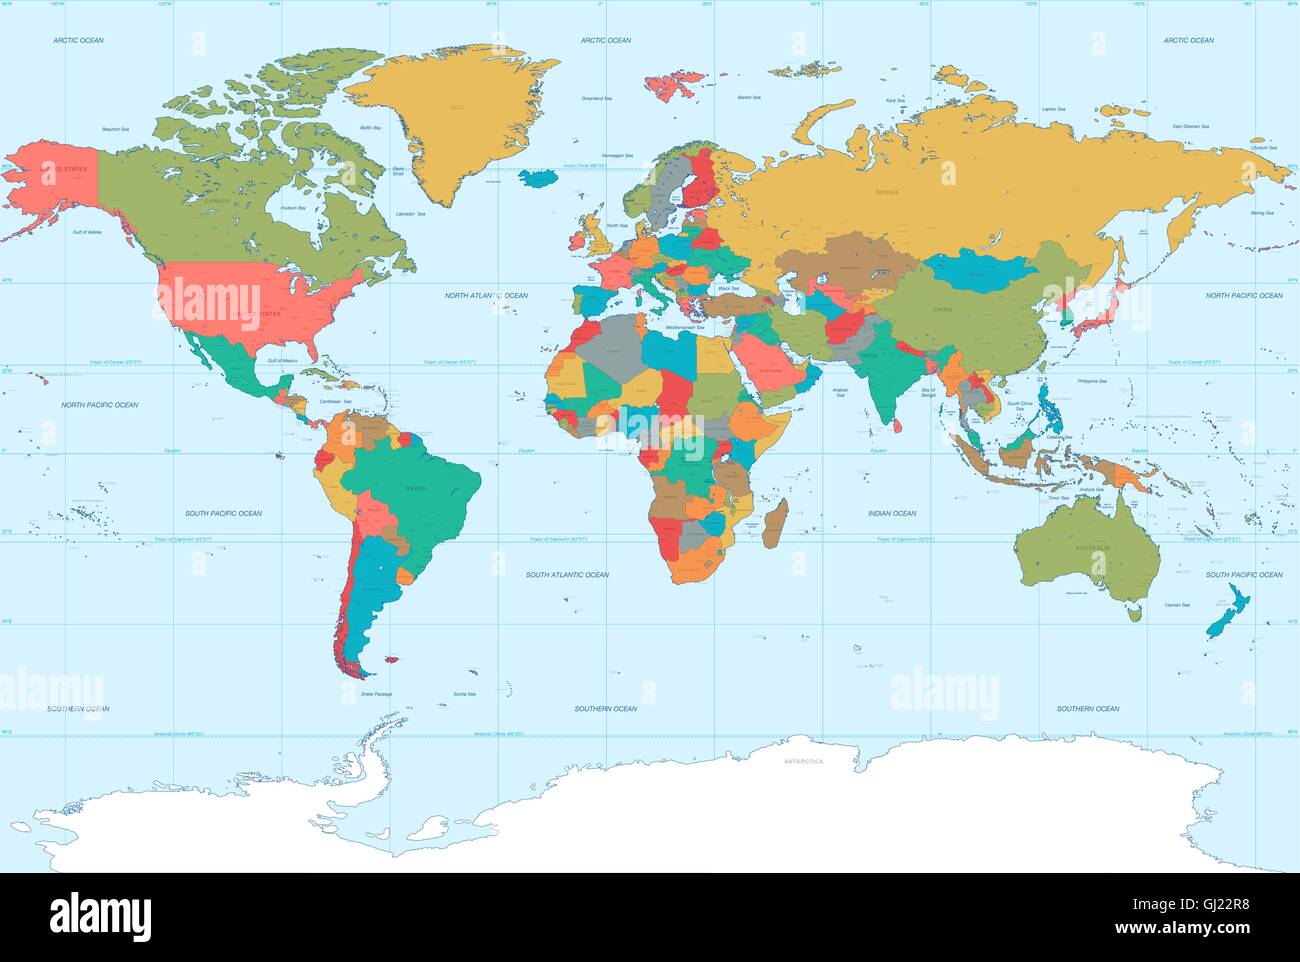 Vektor-Illustration der Weltkarte mit hohem Detailgrad. Mit politischen Grenzen, vollständigen Namen, Flüssen und Seen. Stock Vektor